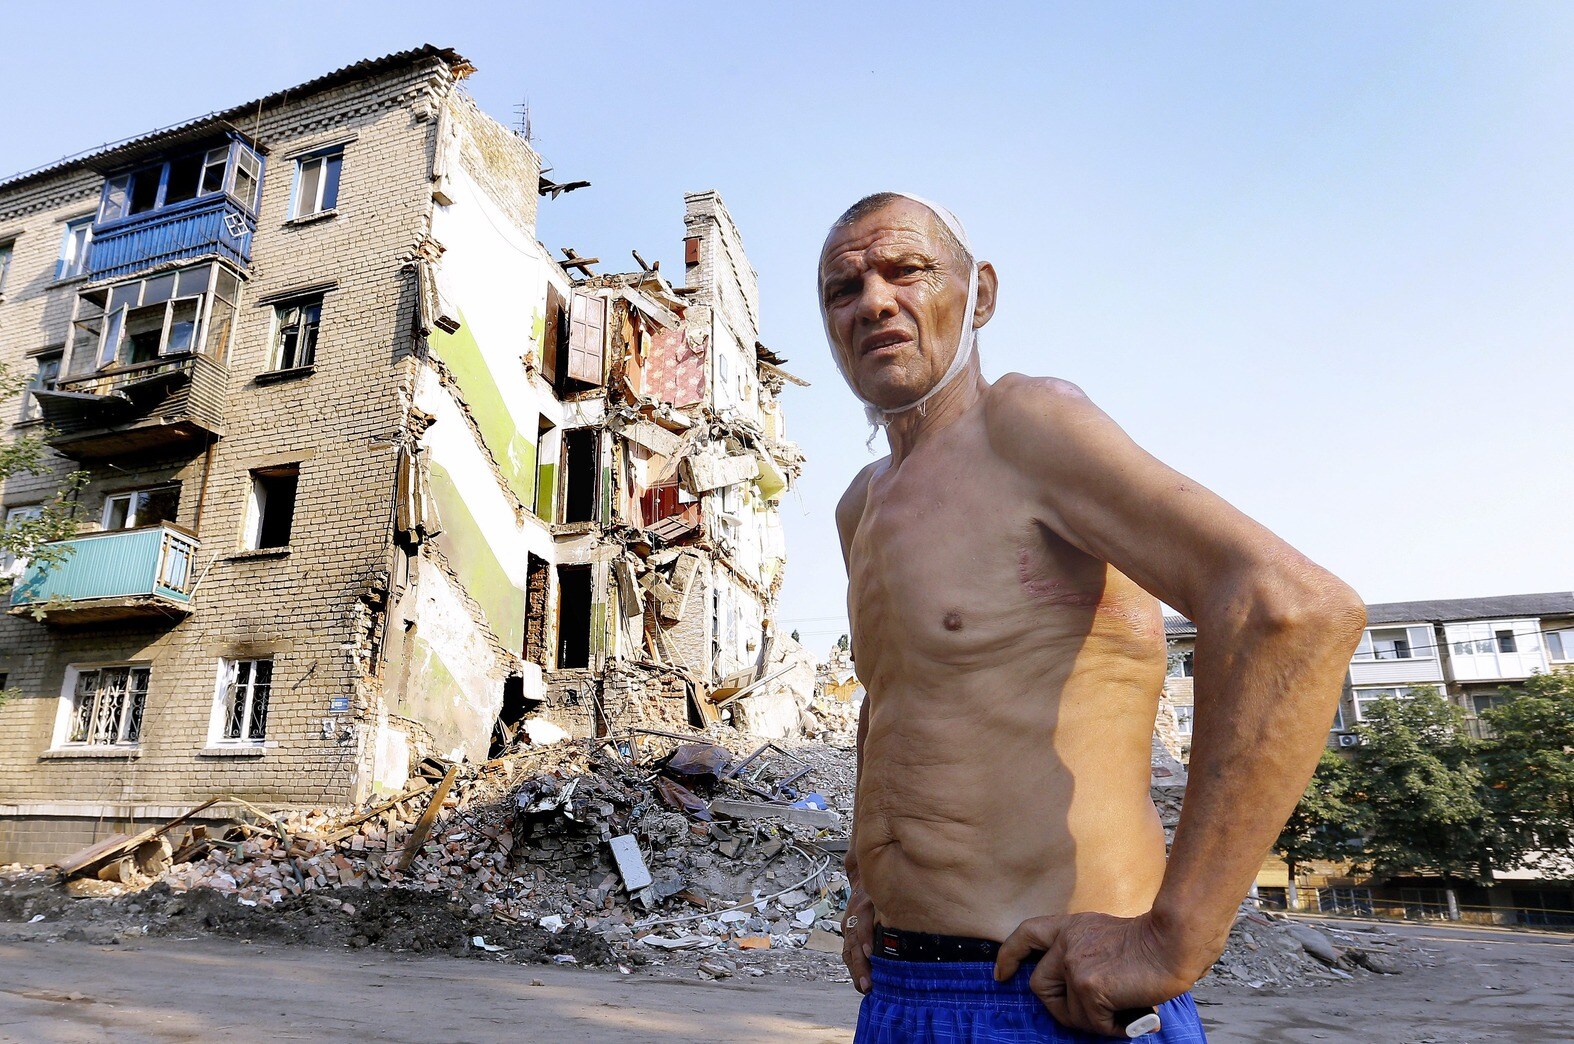 Wetten tellen in Donetsk elke dag iets minder